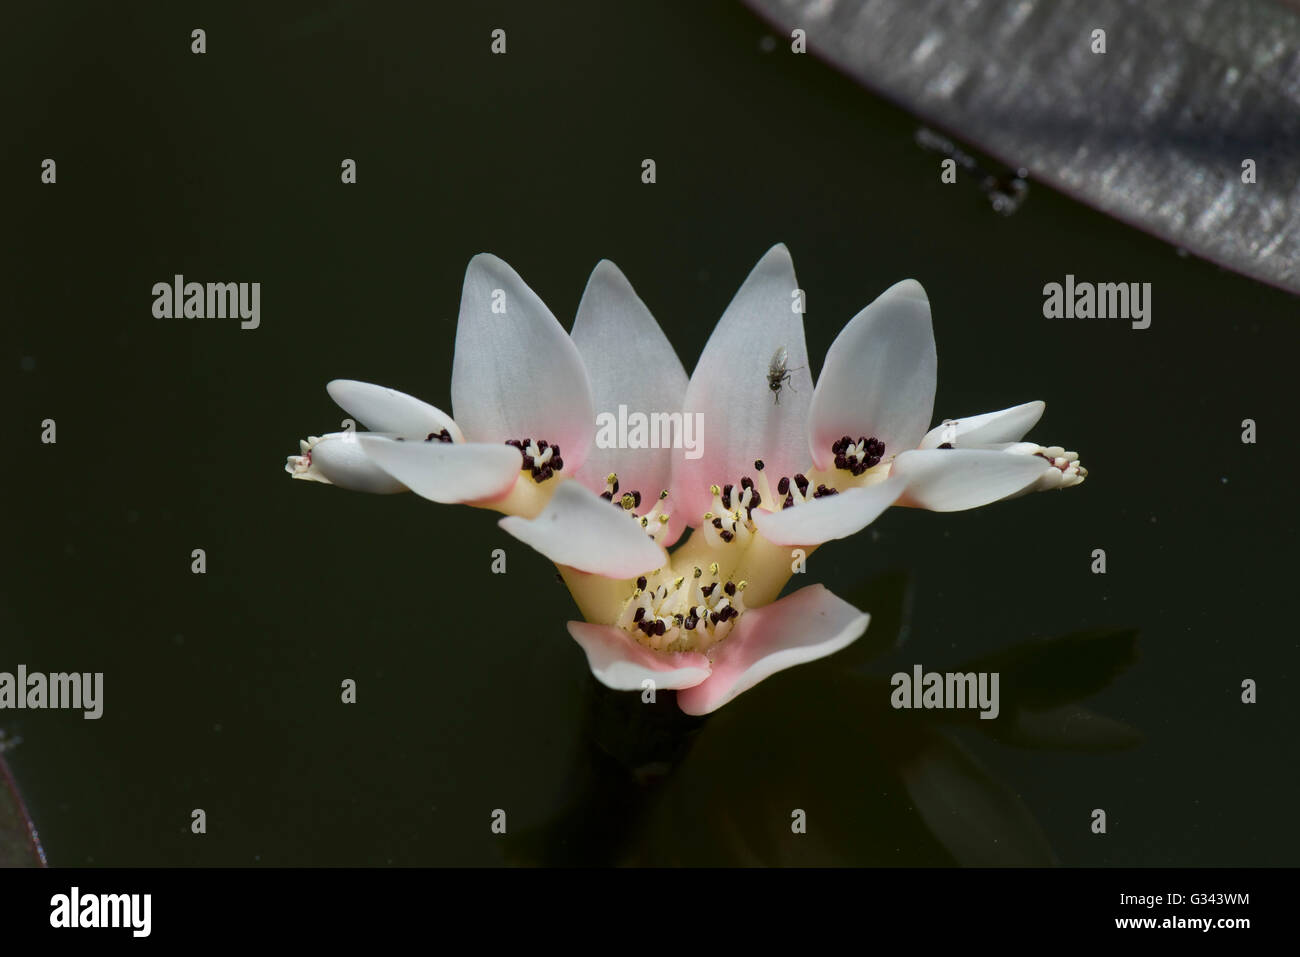 Blume des Kap Laichkräuter, Aponogeton Distachyos Blume auf der Oberfläche von einem Gartenteich, Mai Stockfoto